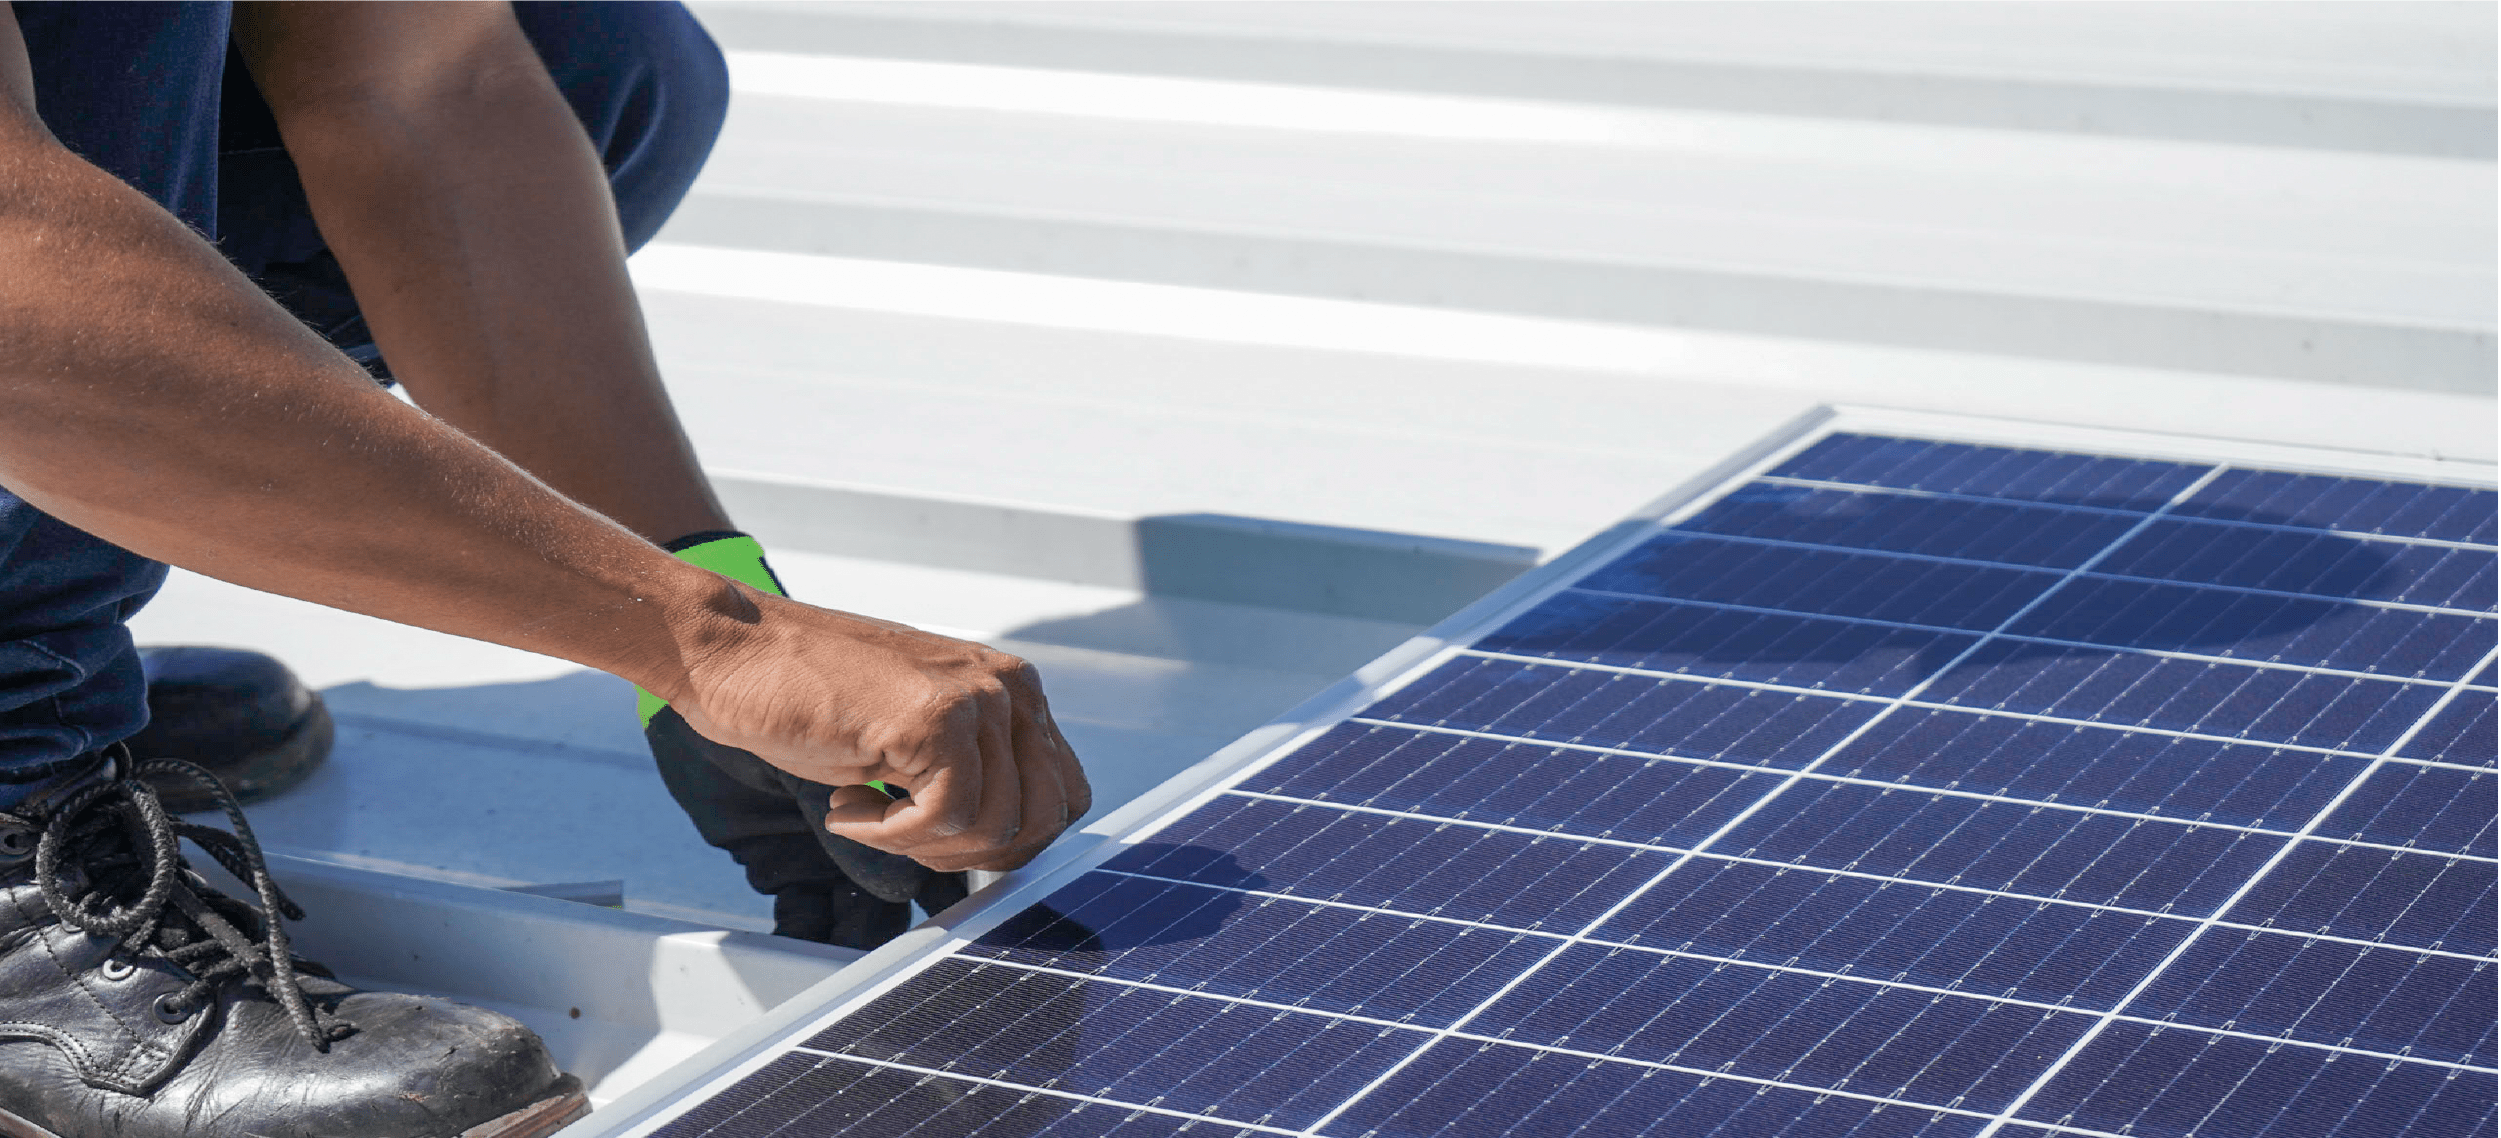 Cuál es el costo de mantenimiento de un panel solar? - La Bodega Solar